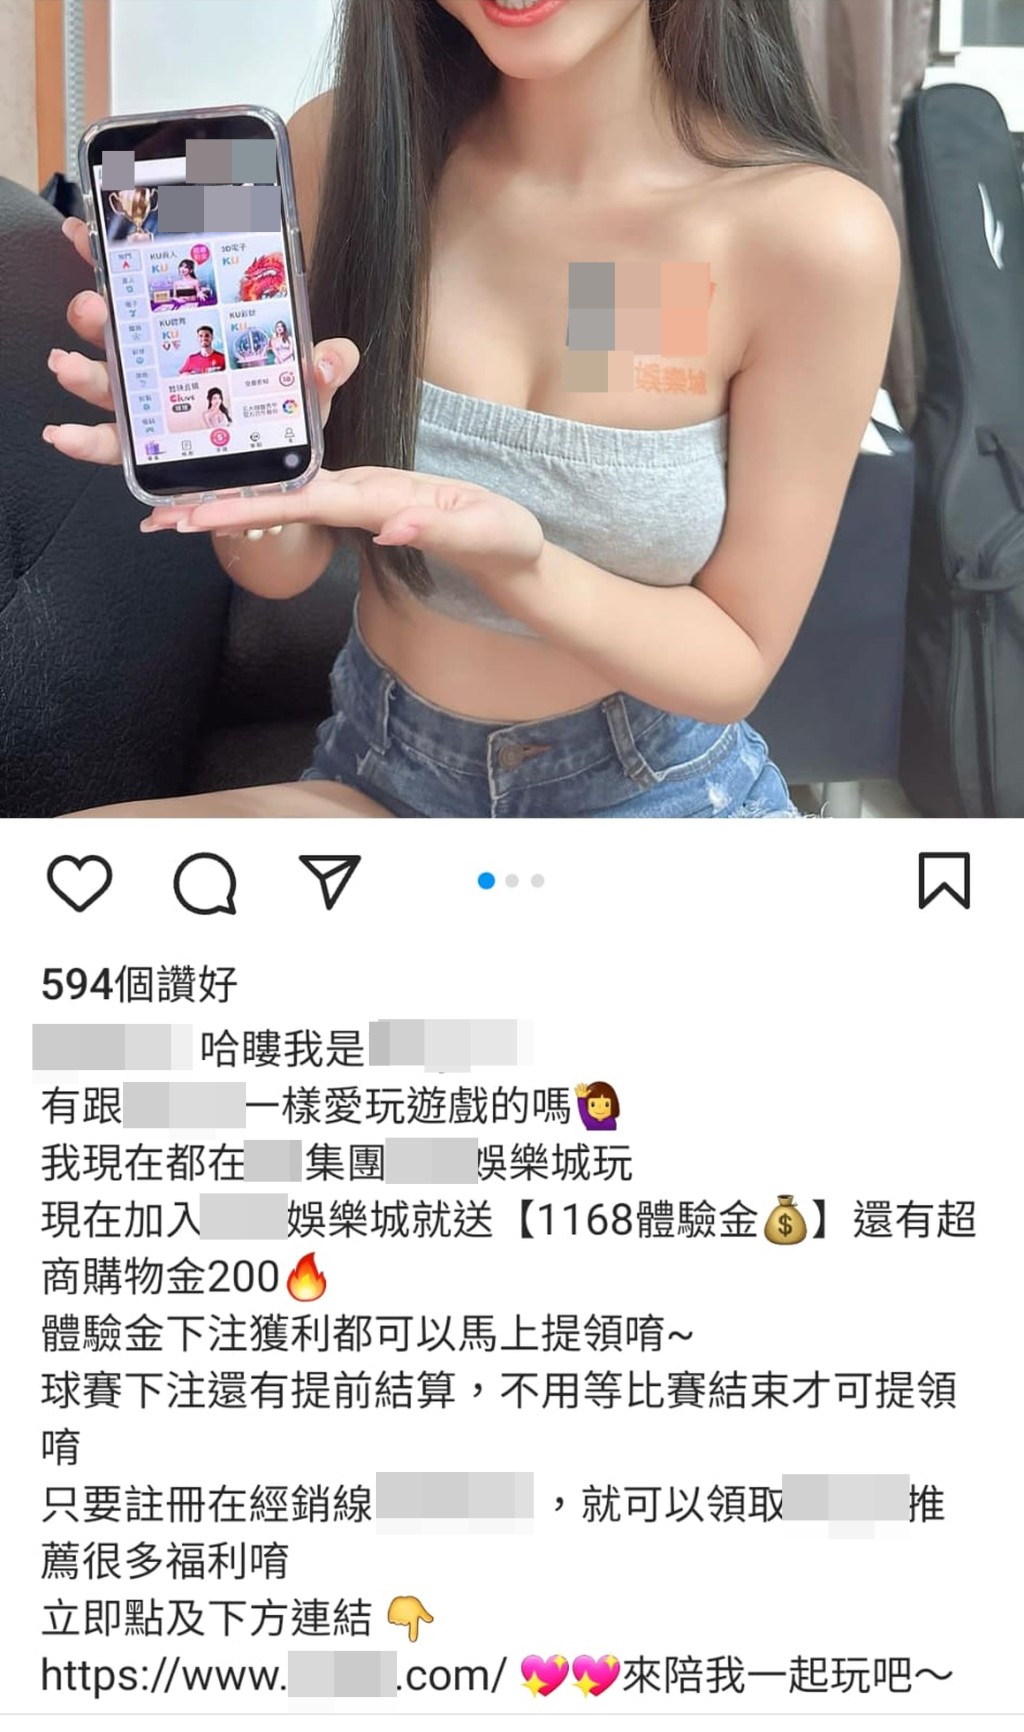 台灣「IG女神」拿起手機，畫面顯示為賭博網站「XXX娛樂城」的主頁。